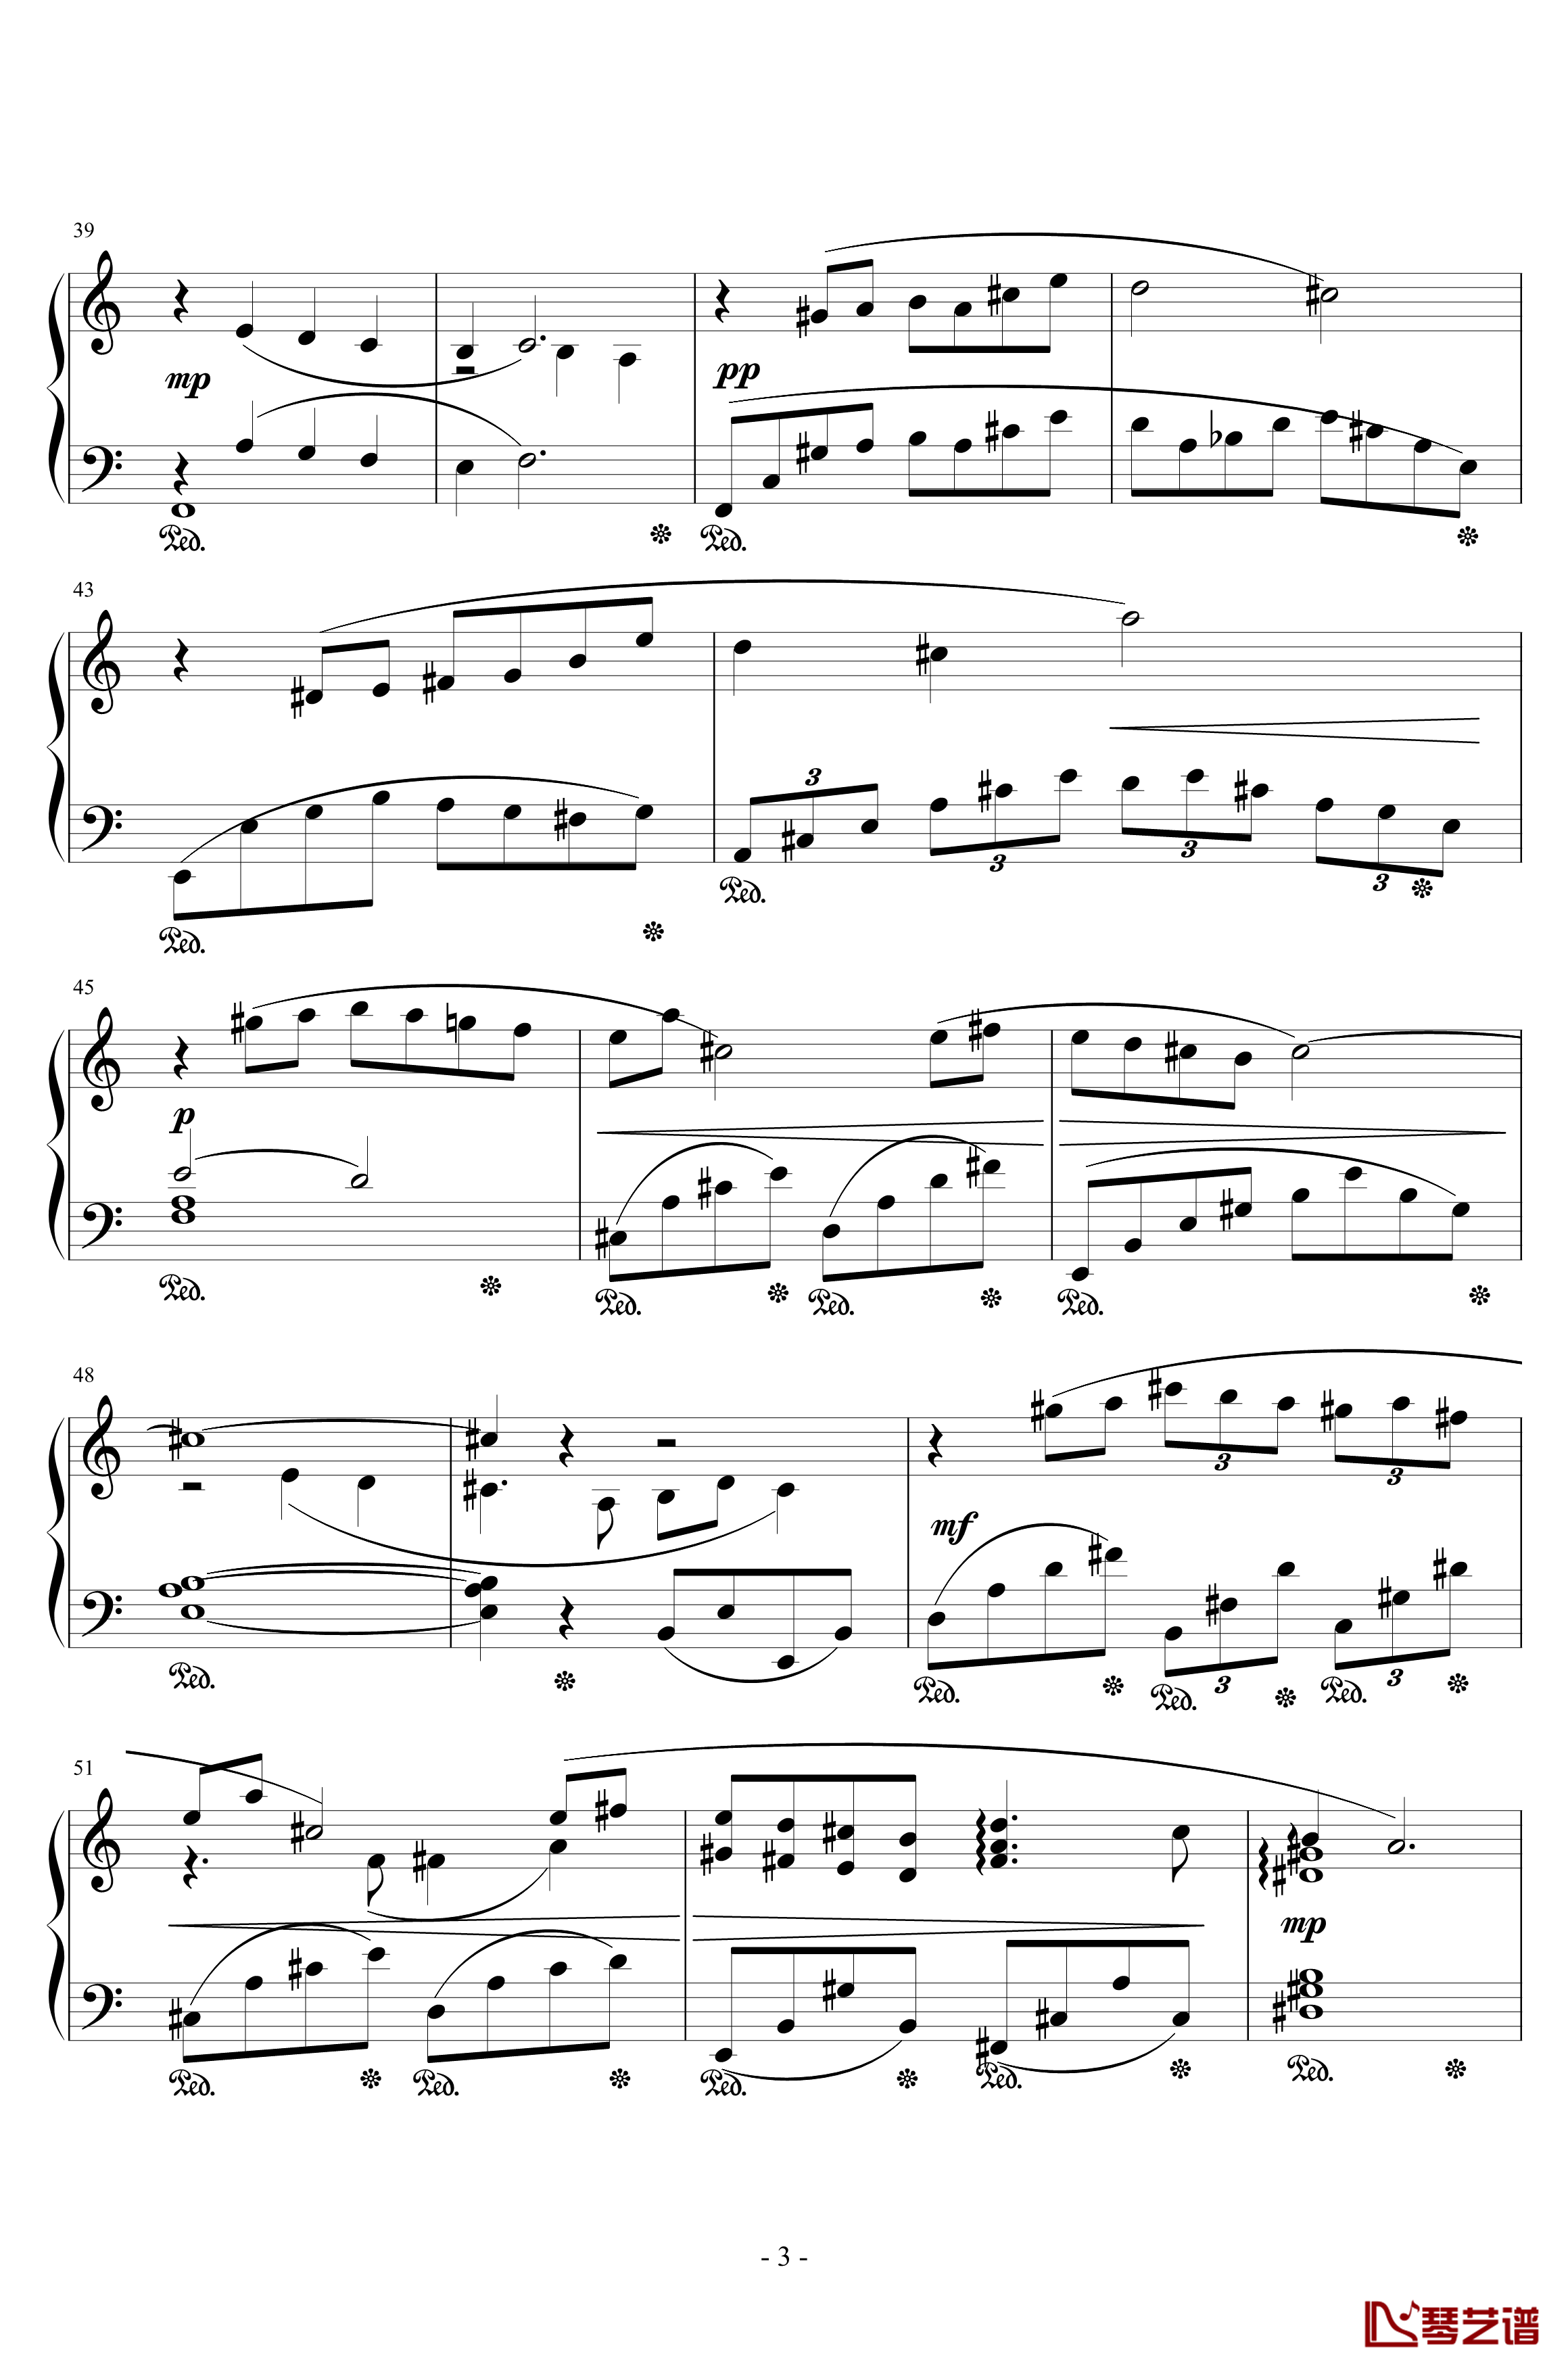 最终幻想8花园主题音乐钢琴谱-植松伸夫3